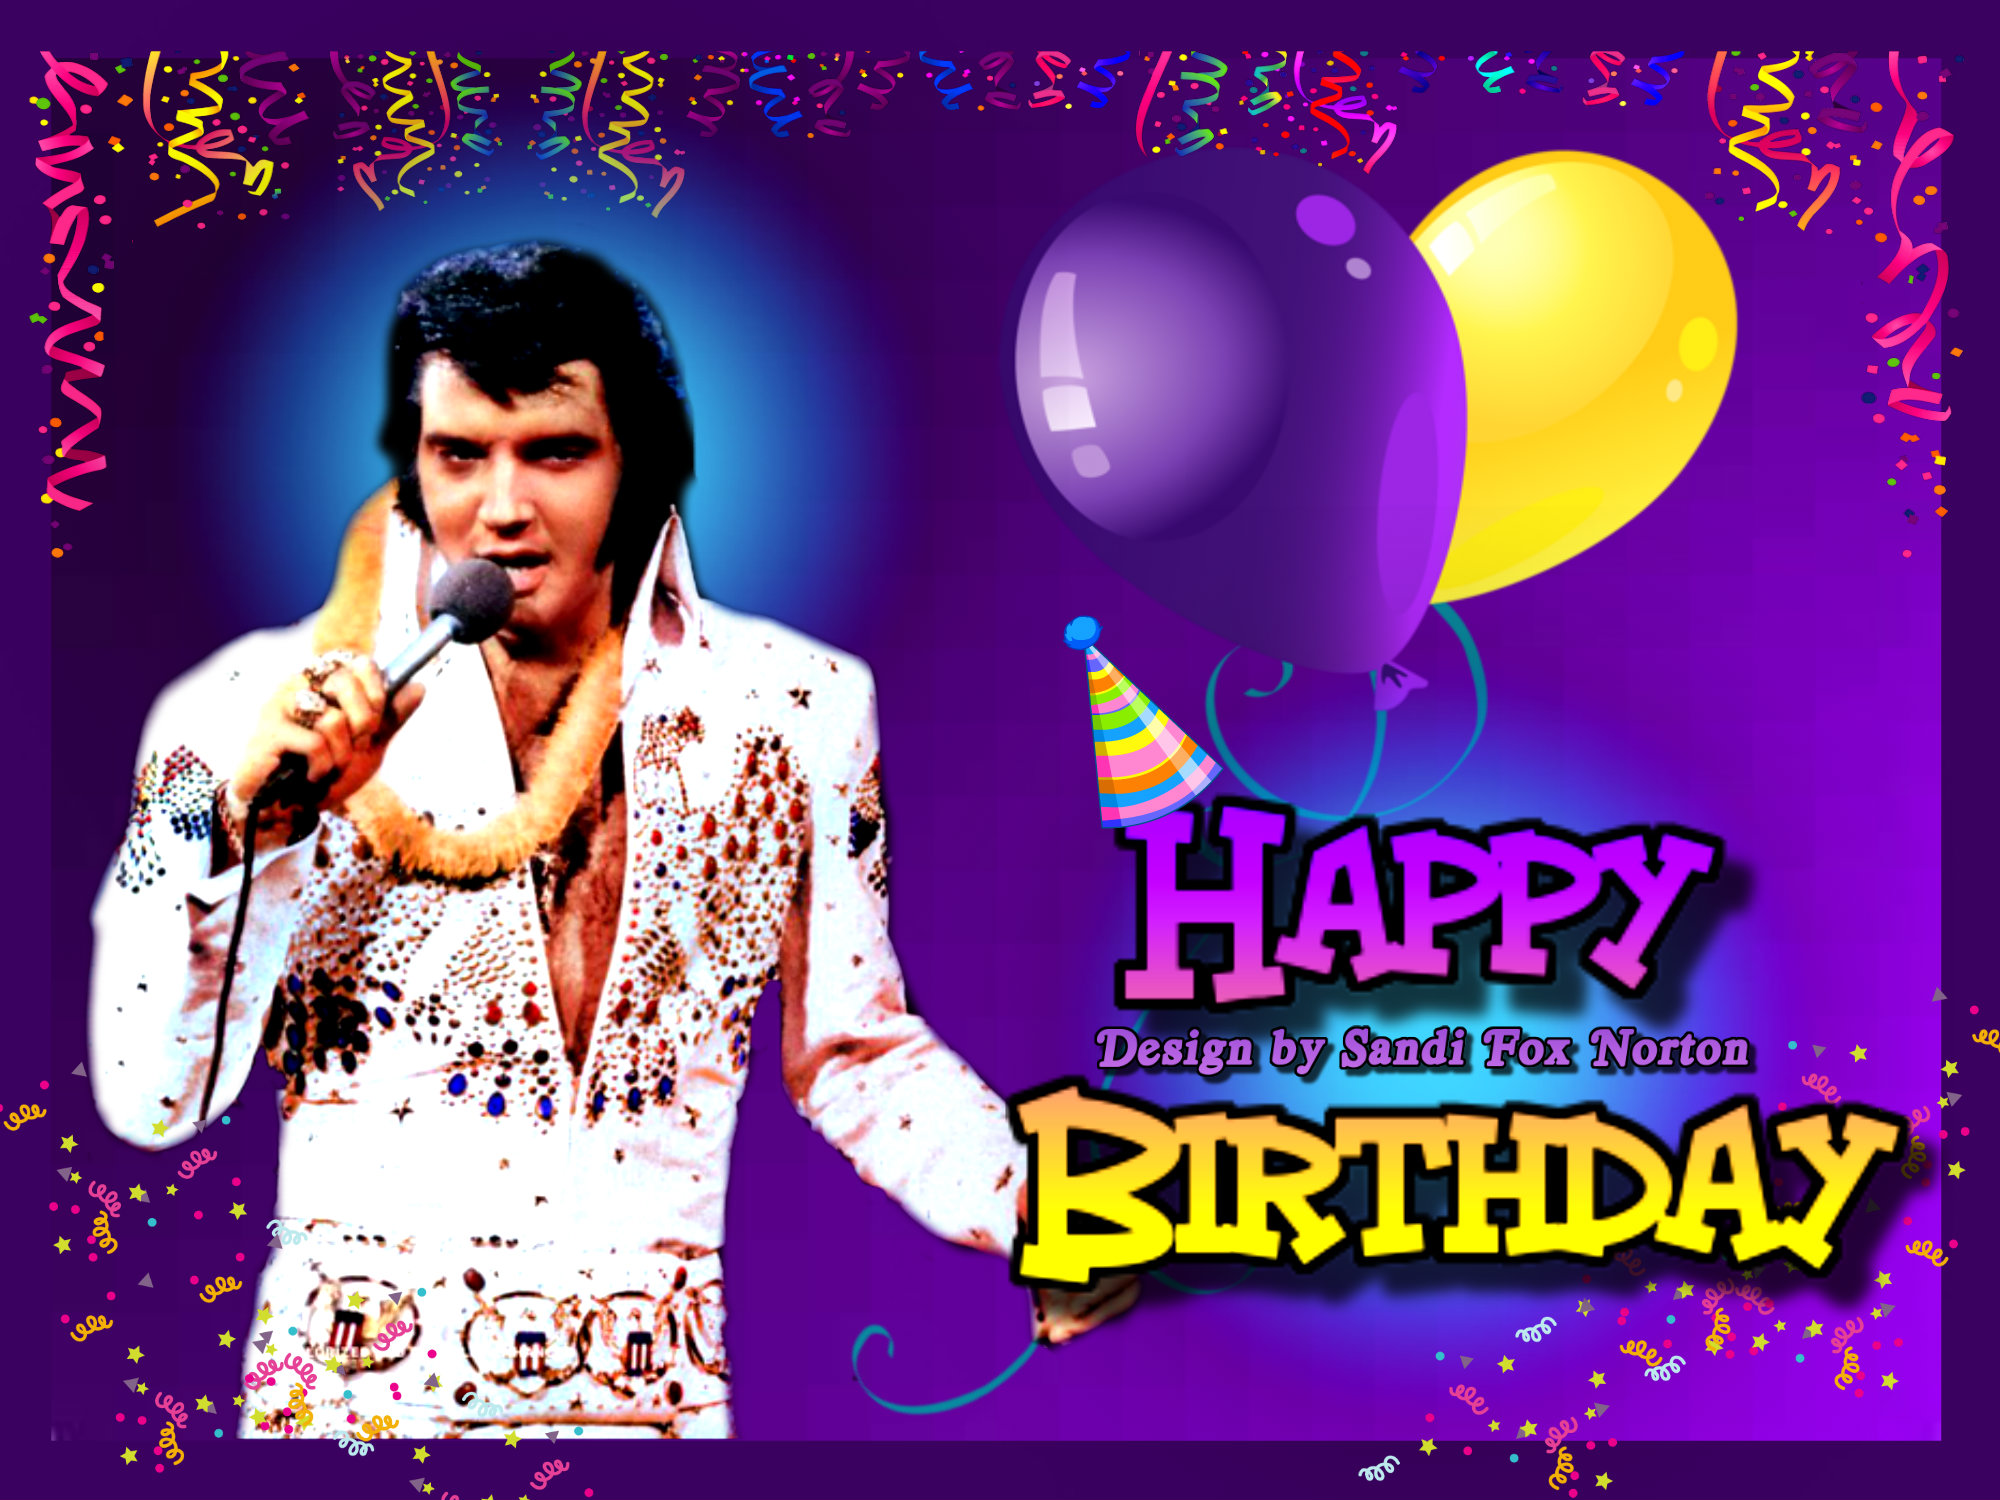 Elvis Presley Virtual Birthday Cards  www.IHeartElvis.net